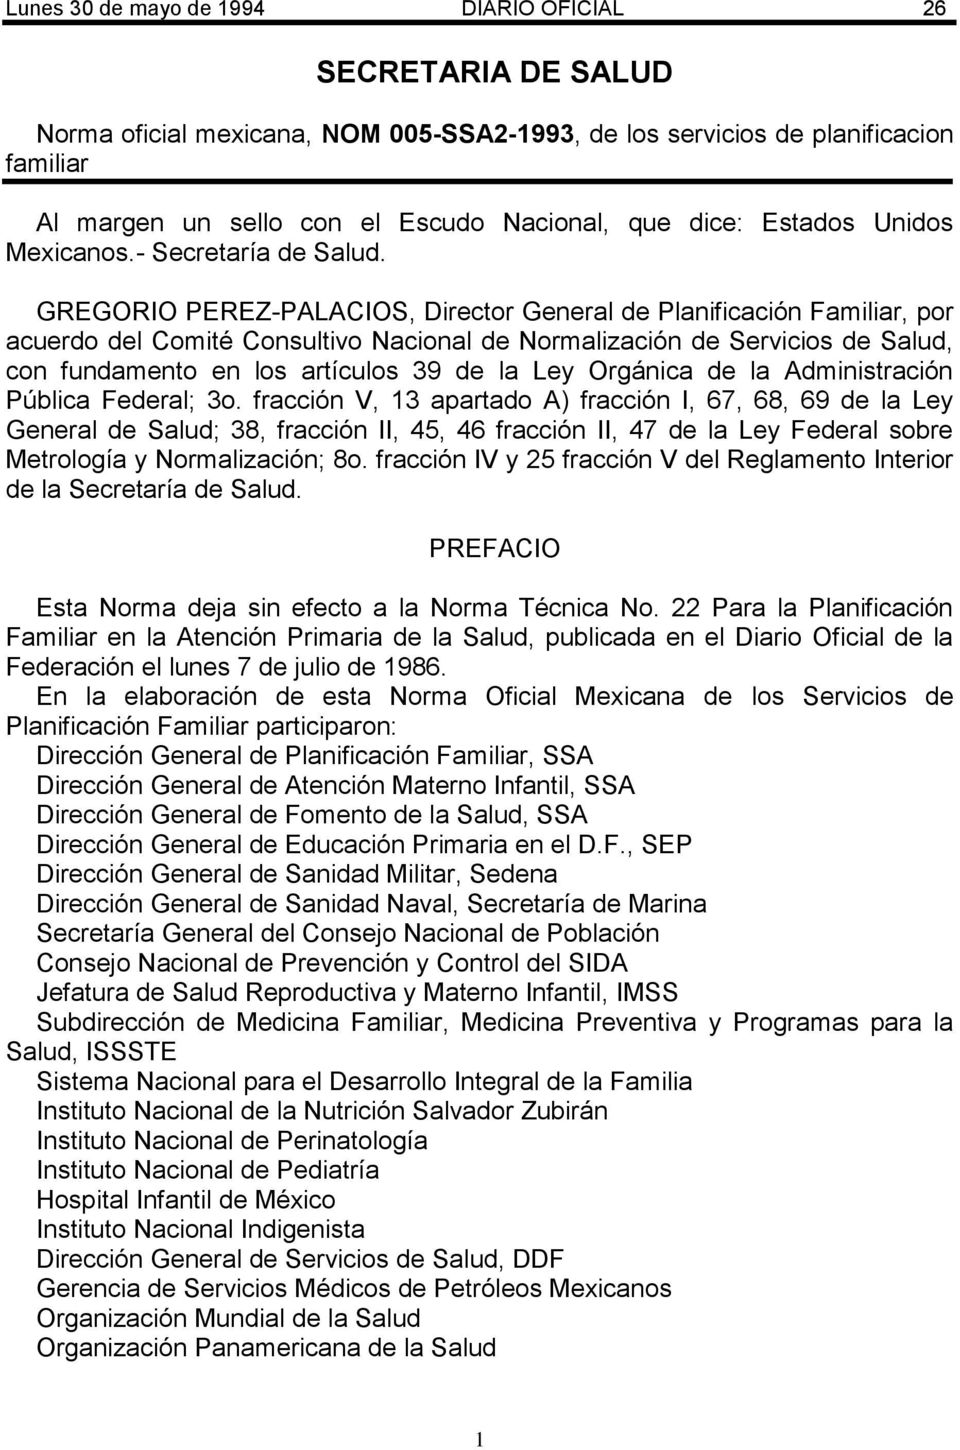 GREGORIO PEREZ-PALACIOS, Director General de Planificación Familiar, por acuerdo del Comité Consultivo Nacional de Normalización de Servicios de Salud, con fundamento en los artículos 39 de la Ley